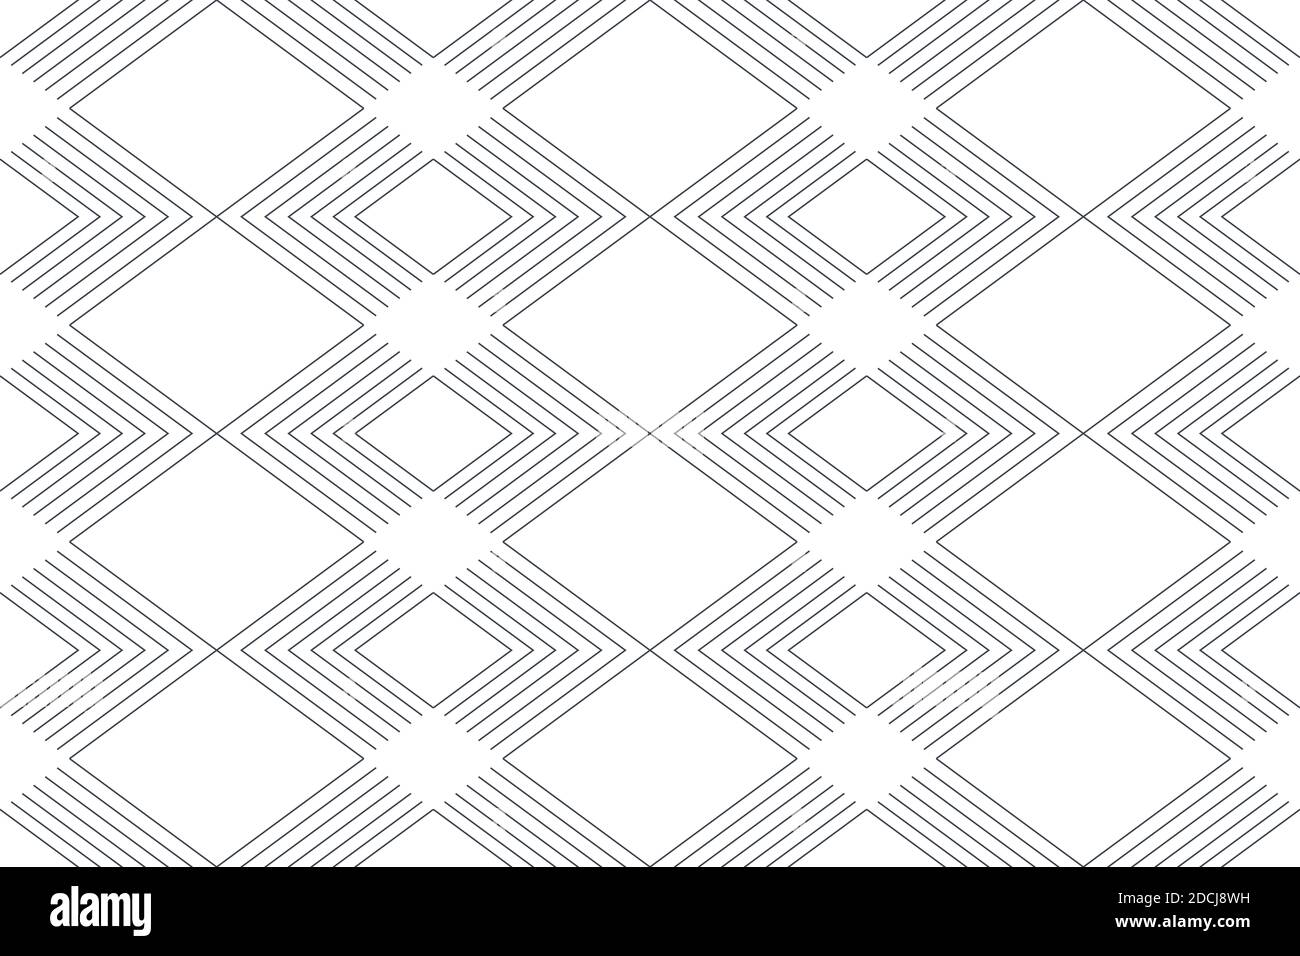 Motif d'arrière-plan abstrait et sans couture composé de lignes répétées formant des formes chevron/losange. Art vectoriel moderne, dynamique et simple Banque D'Images